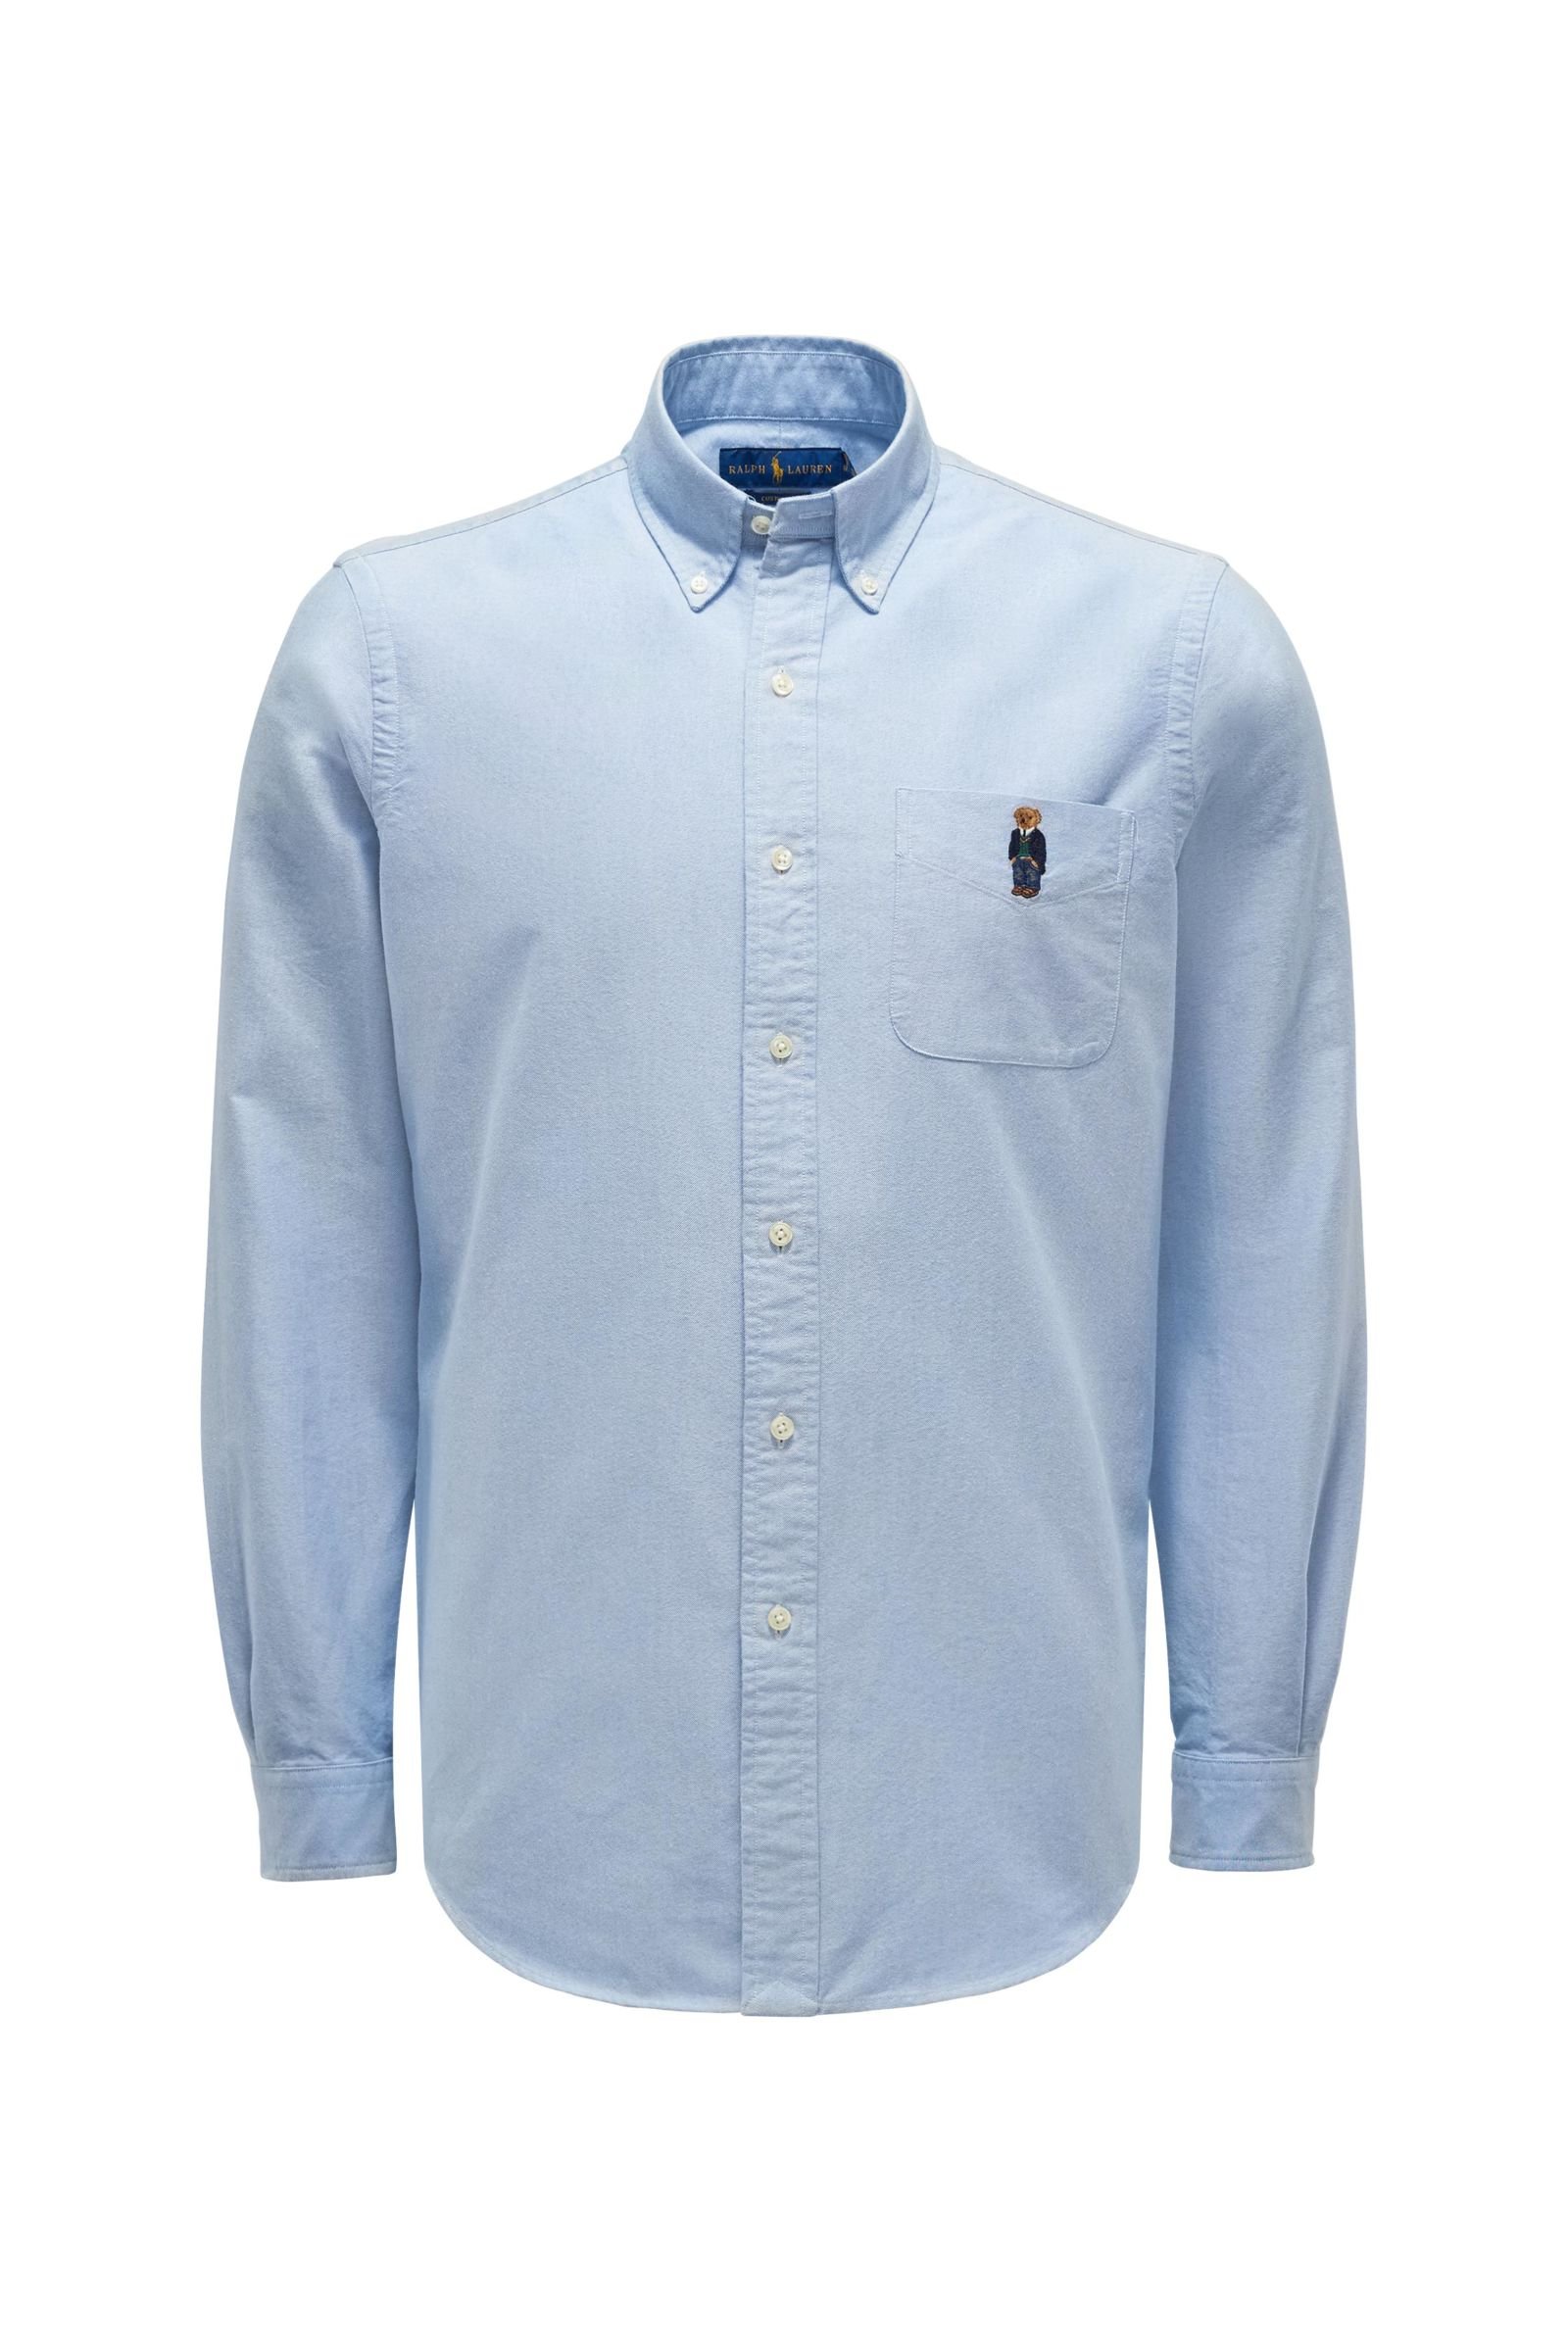 Oxford shirt button-down collar light blue